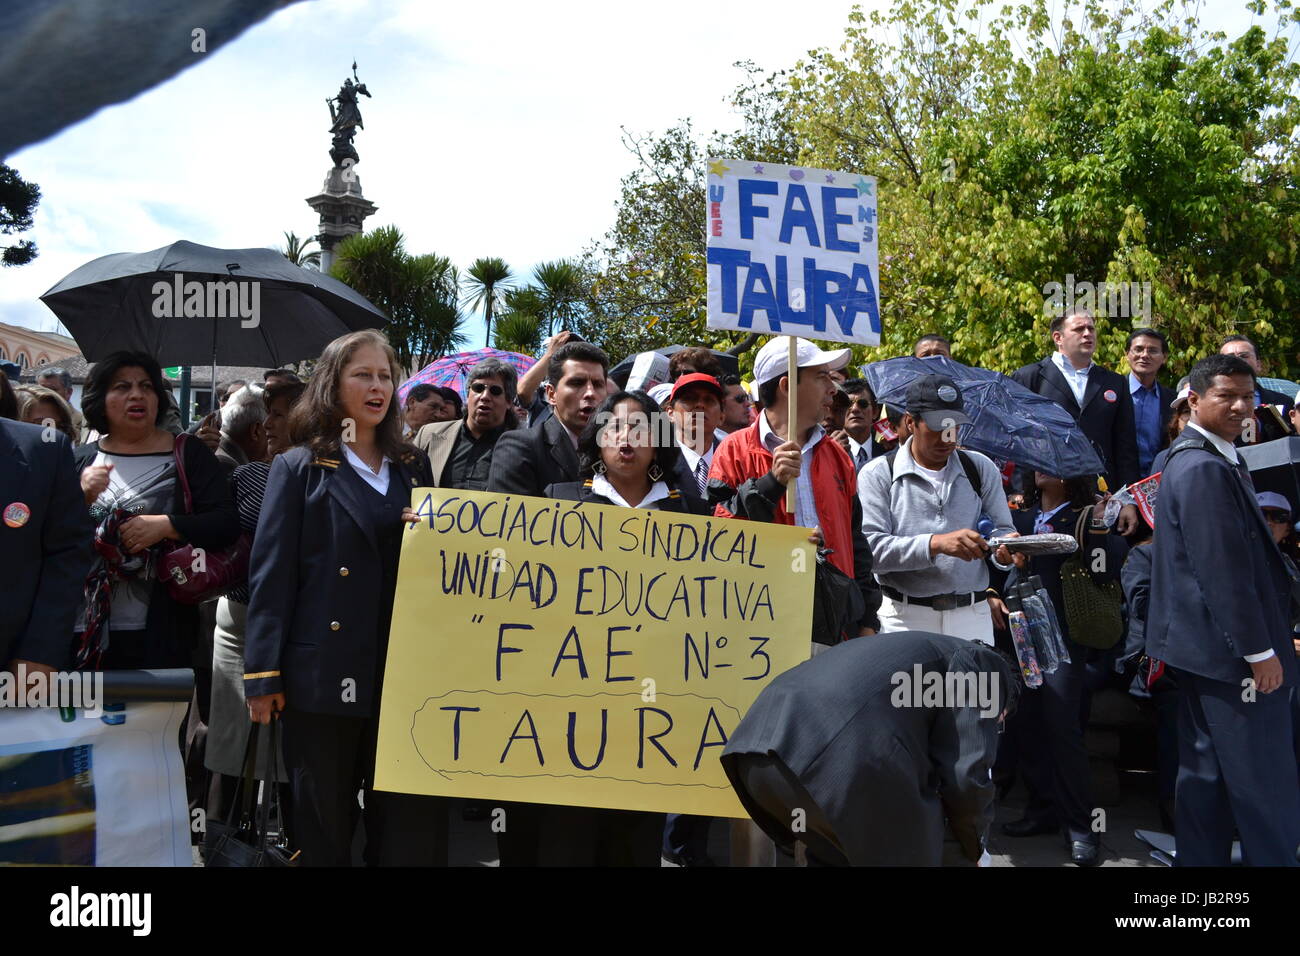 QUITO, ECUADOR - Maggio 07, 2017: un popolo non identificato protestare per ottenere un lavoro dignitoso con denominazione e non contratto dal governo ecuadoriano. Foto Stock